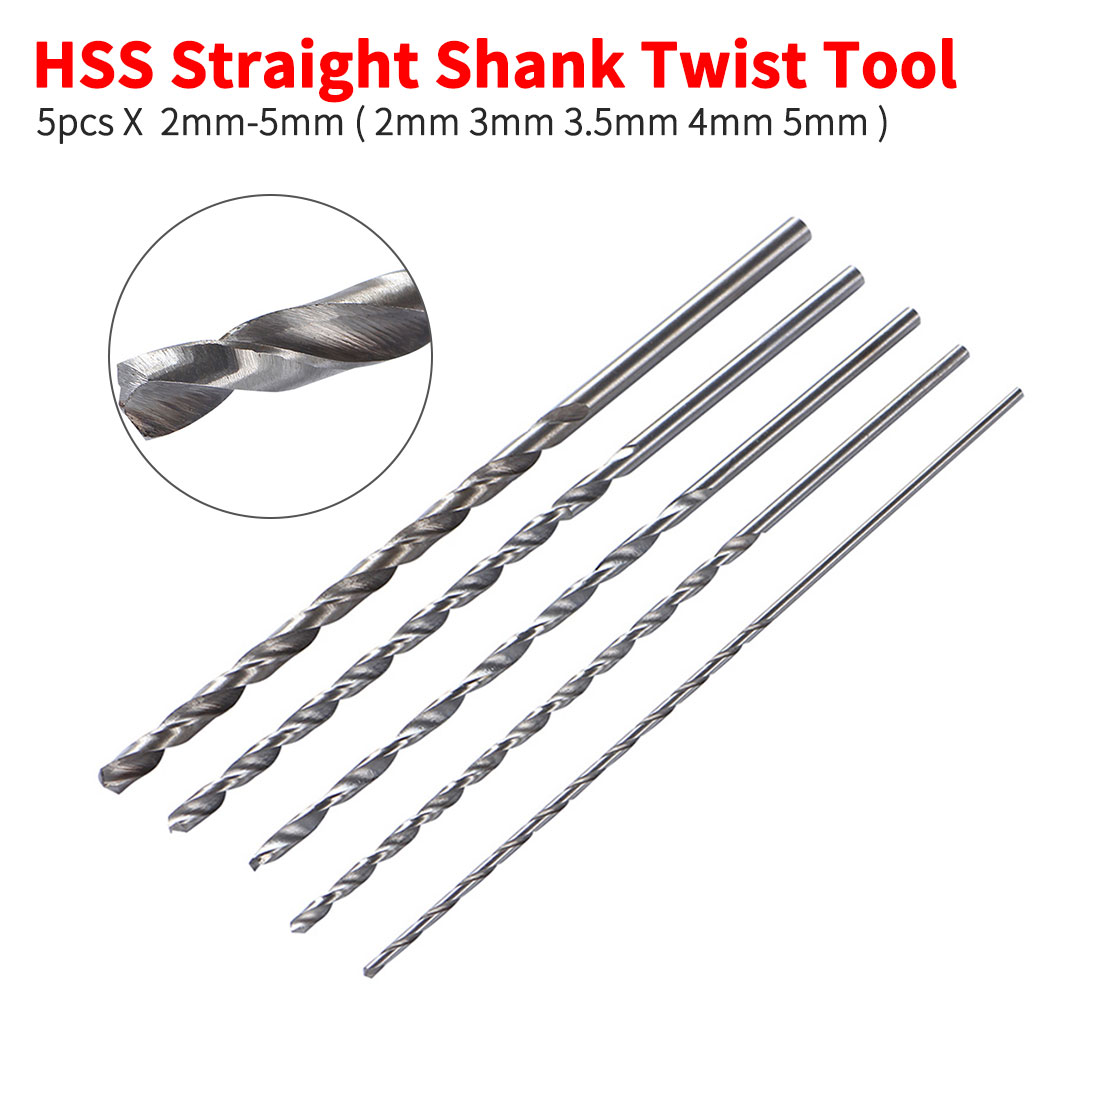 2mm 3mm 3.5mm 4mm 5mm 5pcs Extra Long 150mm HSS Twist Drill Straigth Shank Auger Wood Metal Drilling Tools Drill Bit